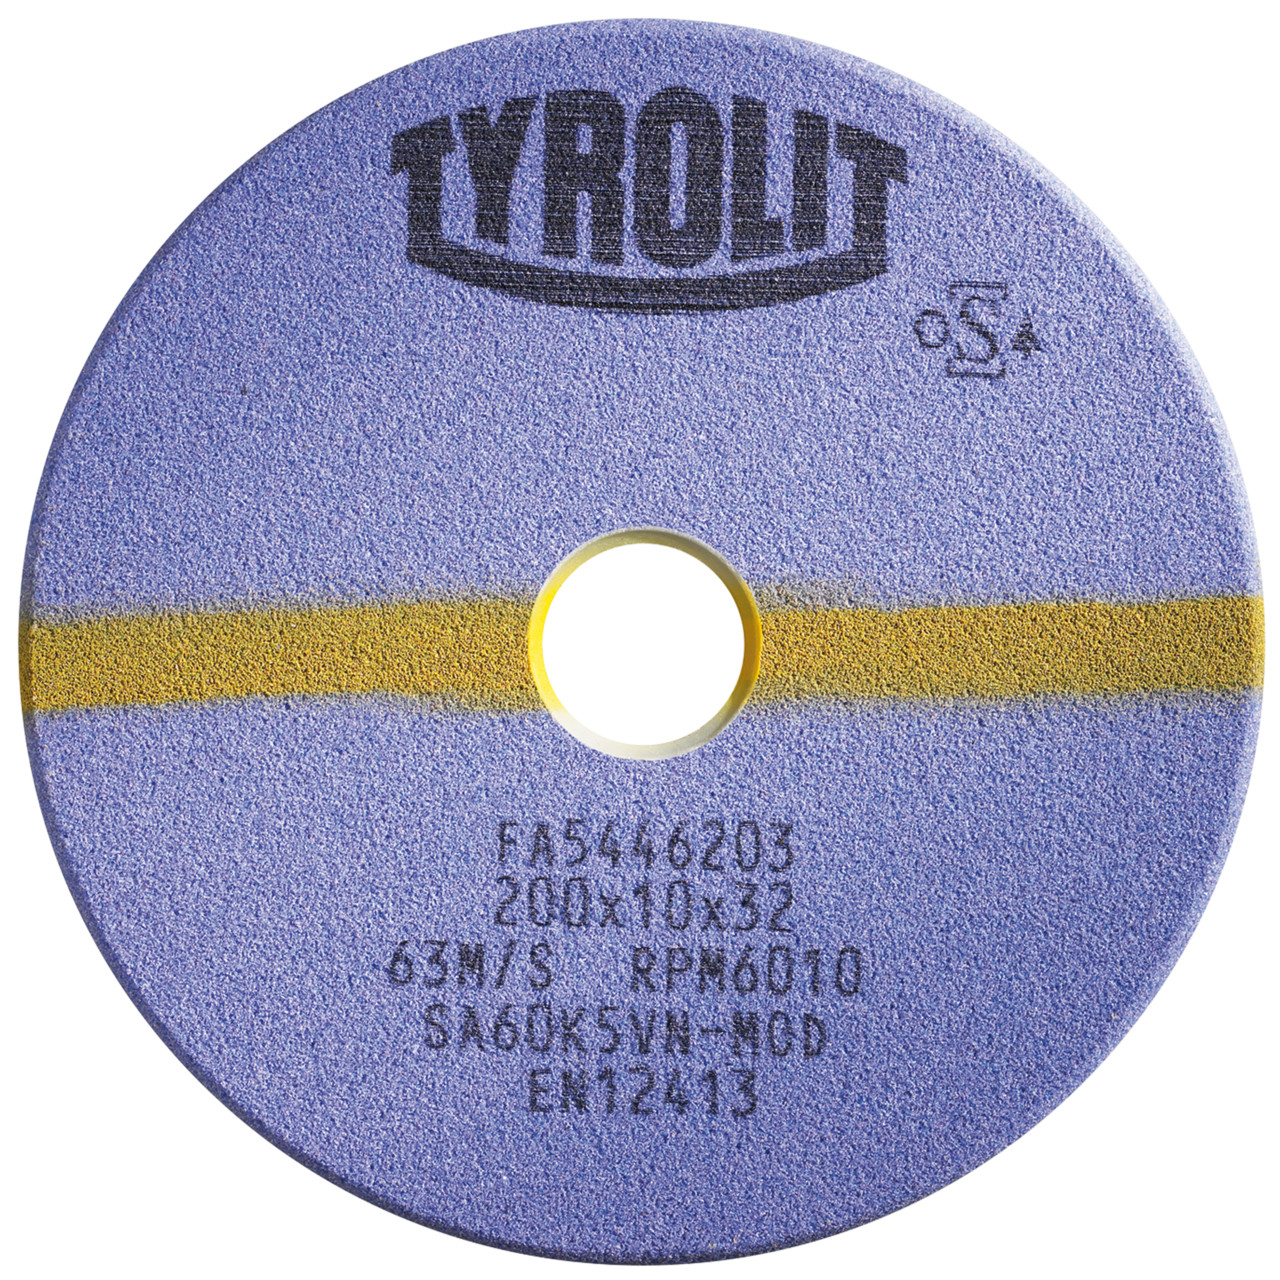 TYROLIT Schleifwerkzeuge für Sägeschärfautomaten DxTxH 200x8x32 Für Kreissägen und stellitierte Band- und Gattersägen, Form: 1F, Art. 805007